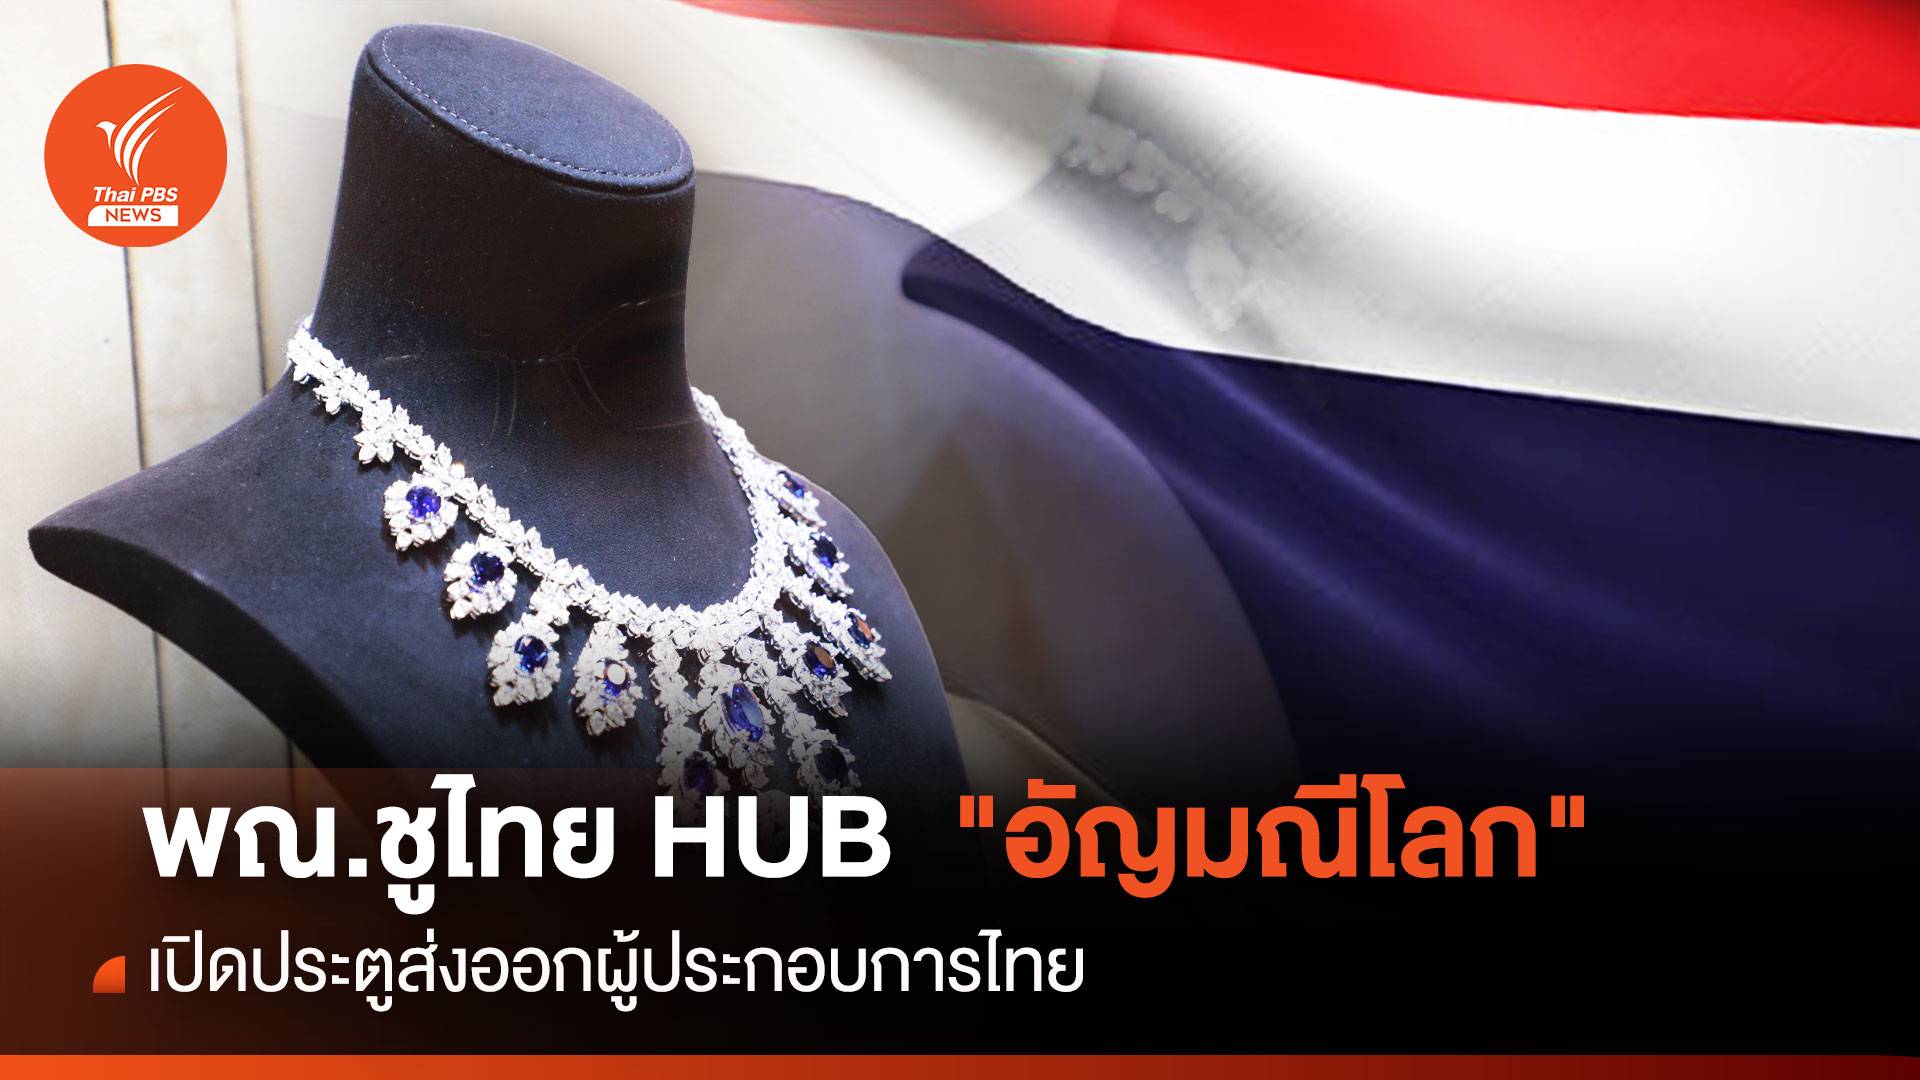 พณ.ชูไทย HUB  "อัญมณีโลก" เปิดประตูส่งออกผู้ประกอบการไทย